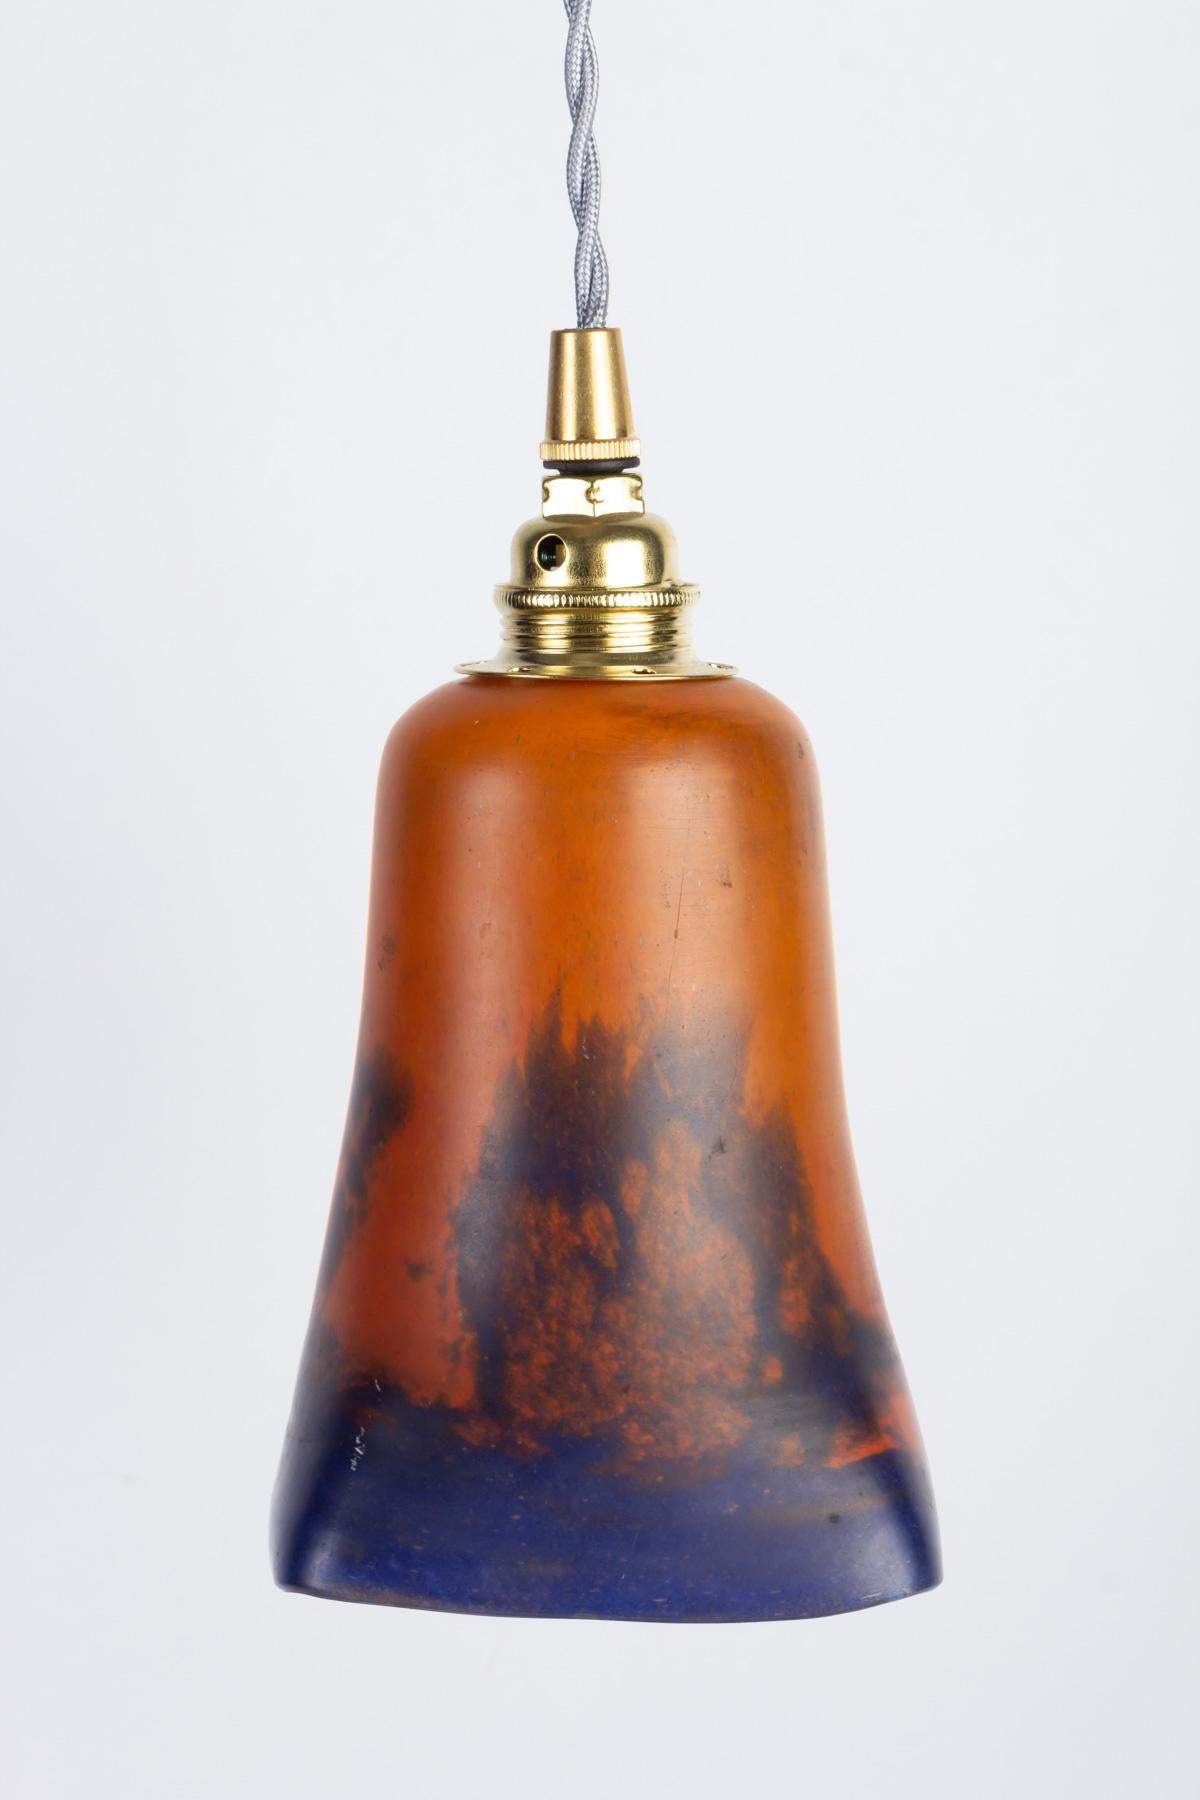 Lampe à suspension, pâte de verre, 1900.
Mesures : H 19 cm, D 10 cm.